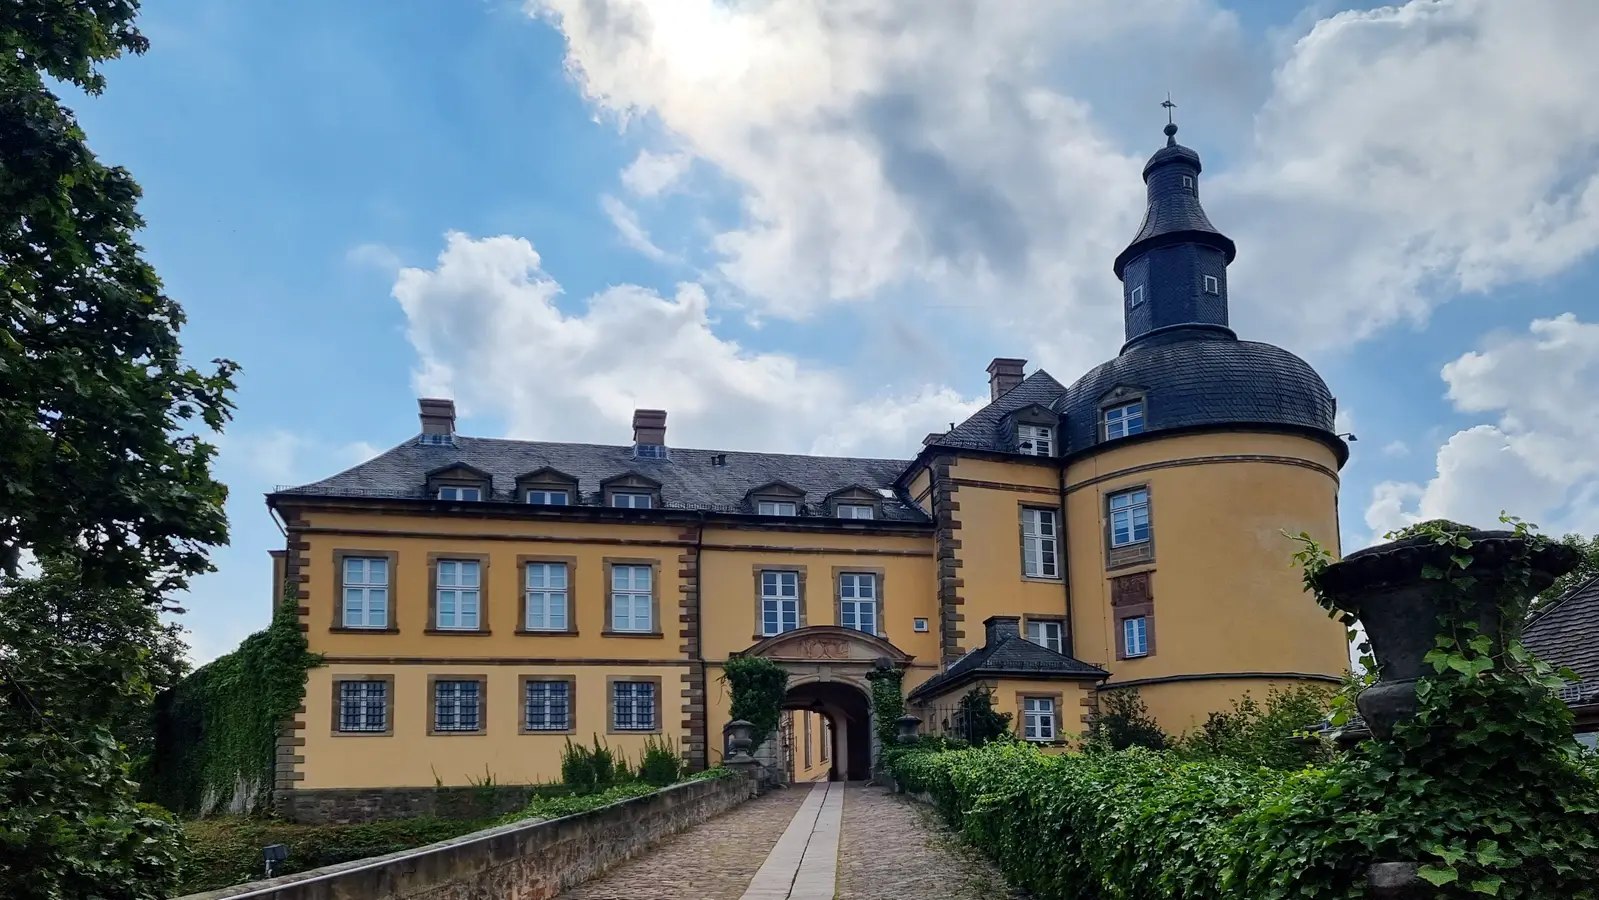 Schloss Friedrichstein in Bad Wildungen